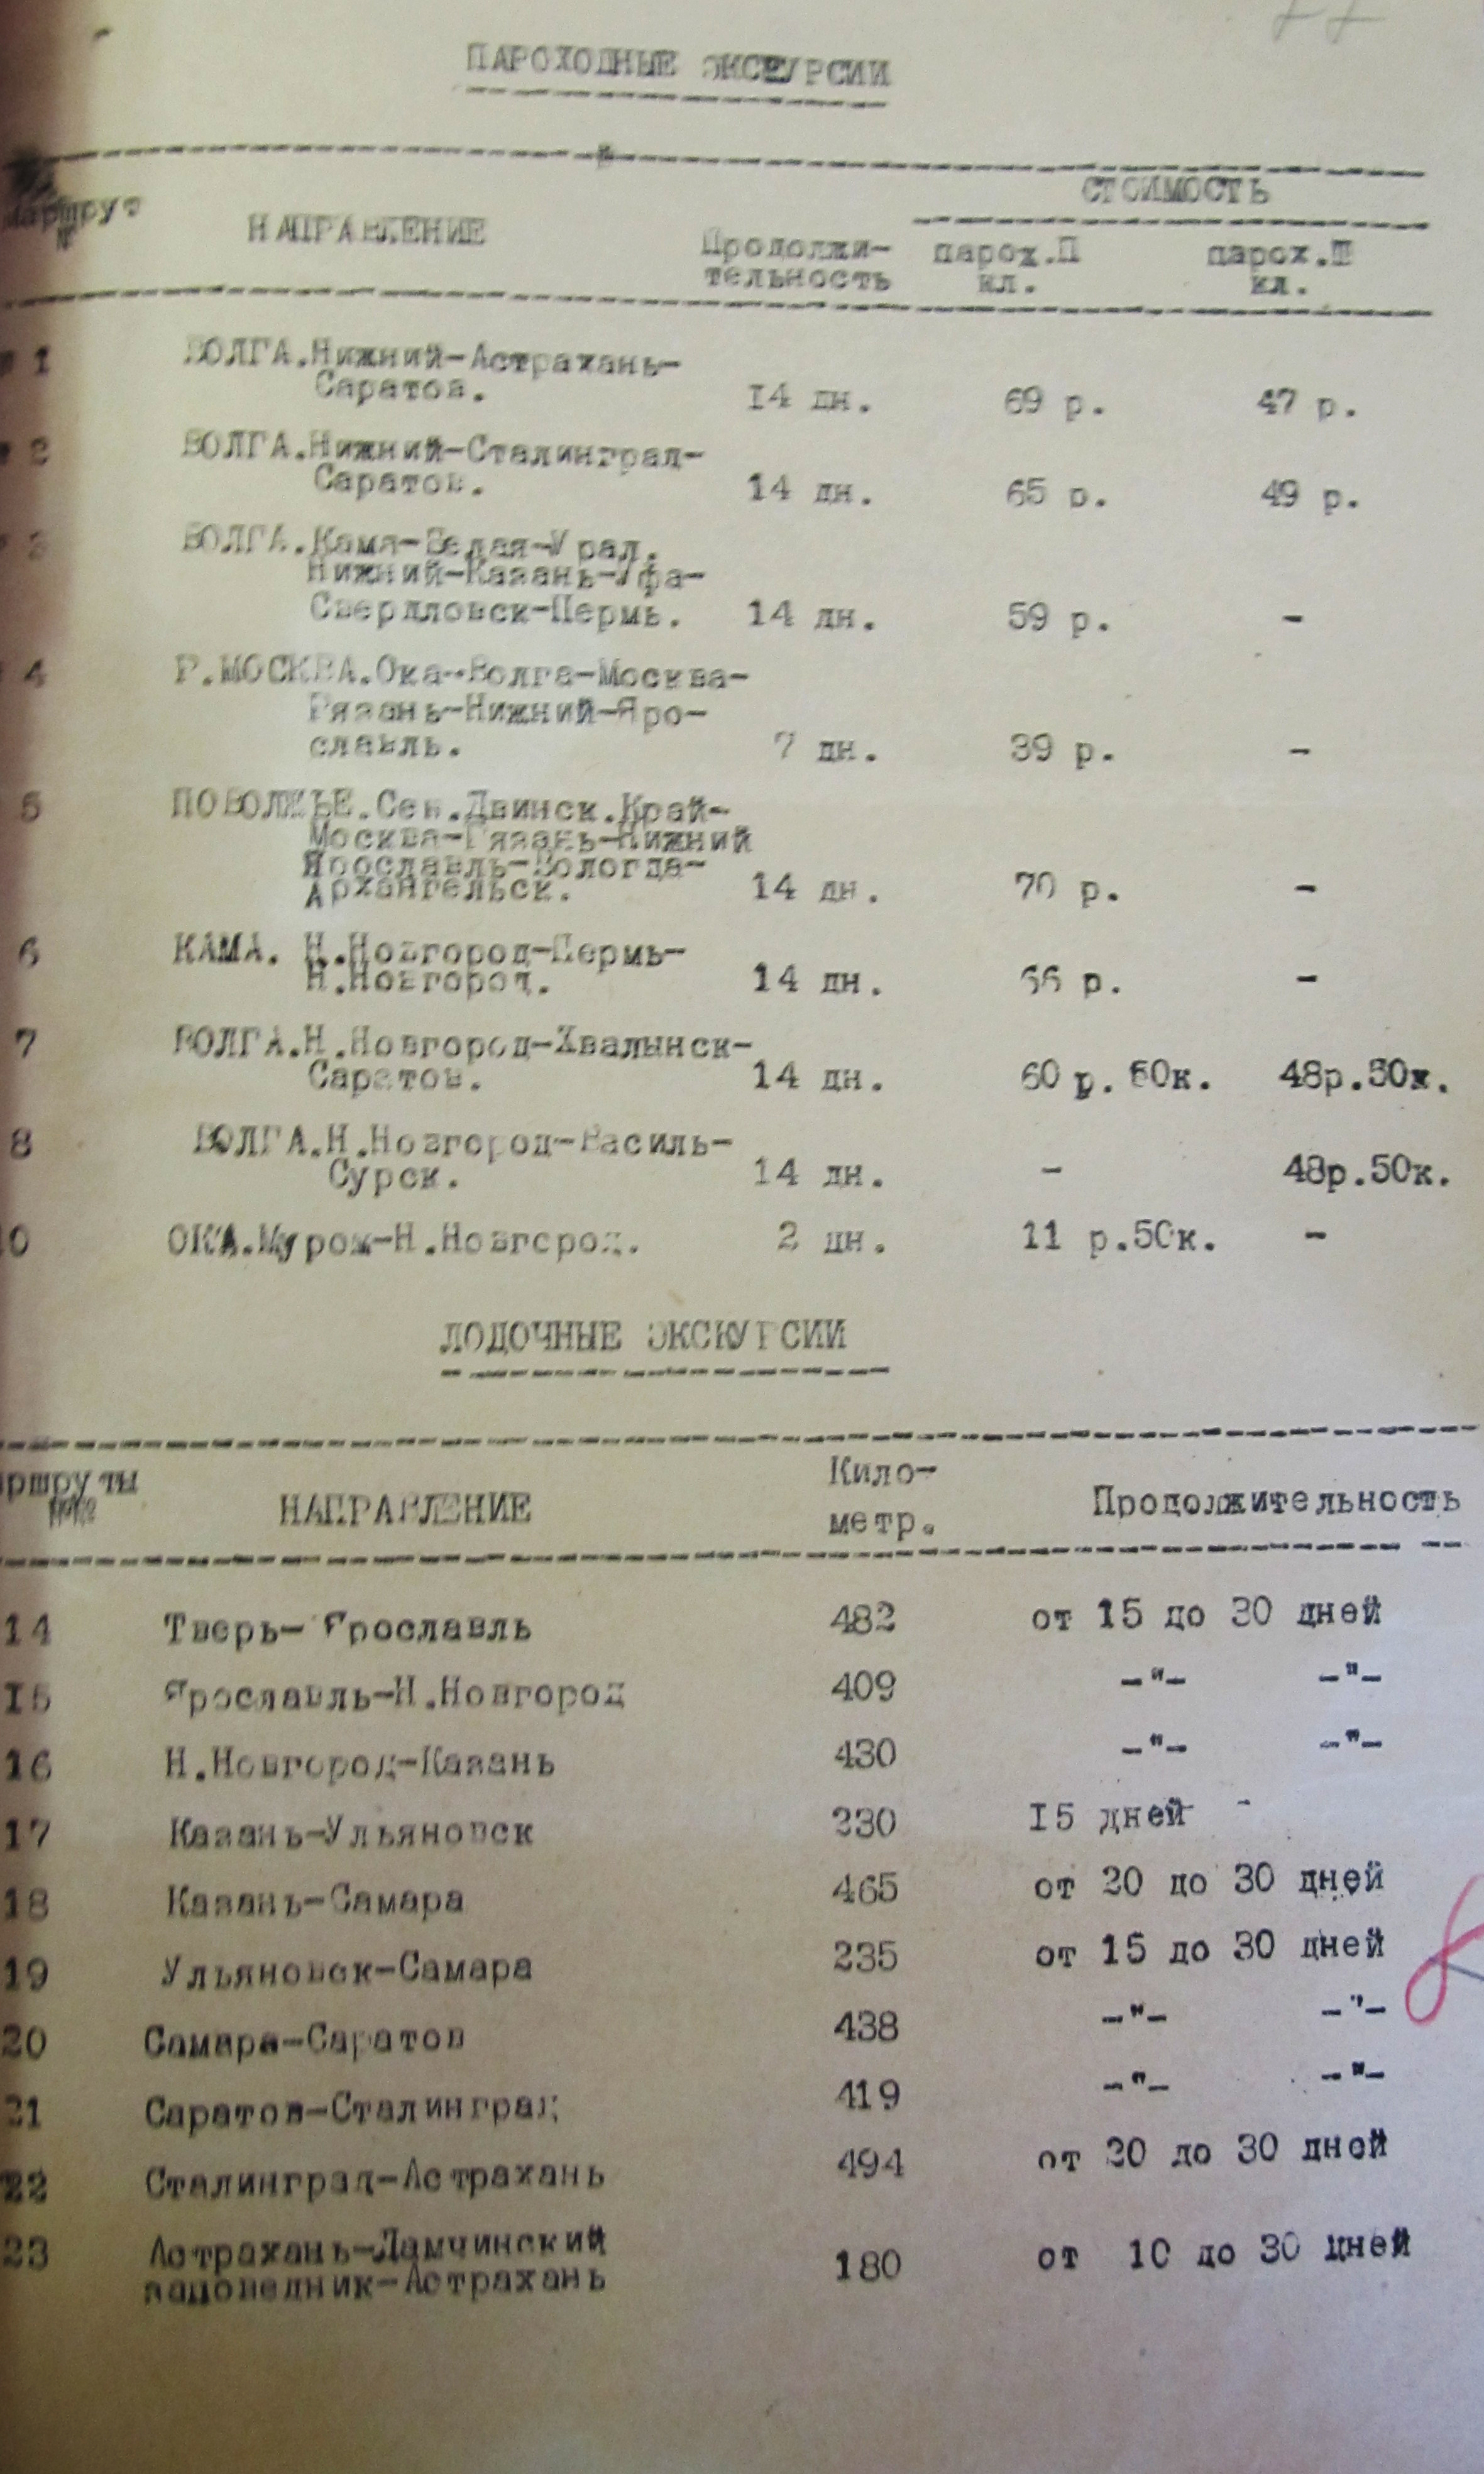 2)	Пароходные и лодочные экскурсии на май-сентябрь 1930 года. РГАЭ. Ф. 7771, Оп. 1. Дело 22.